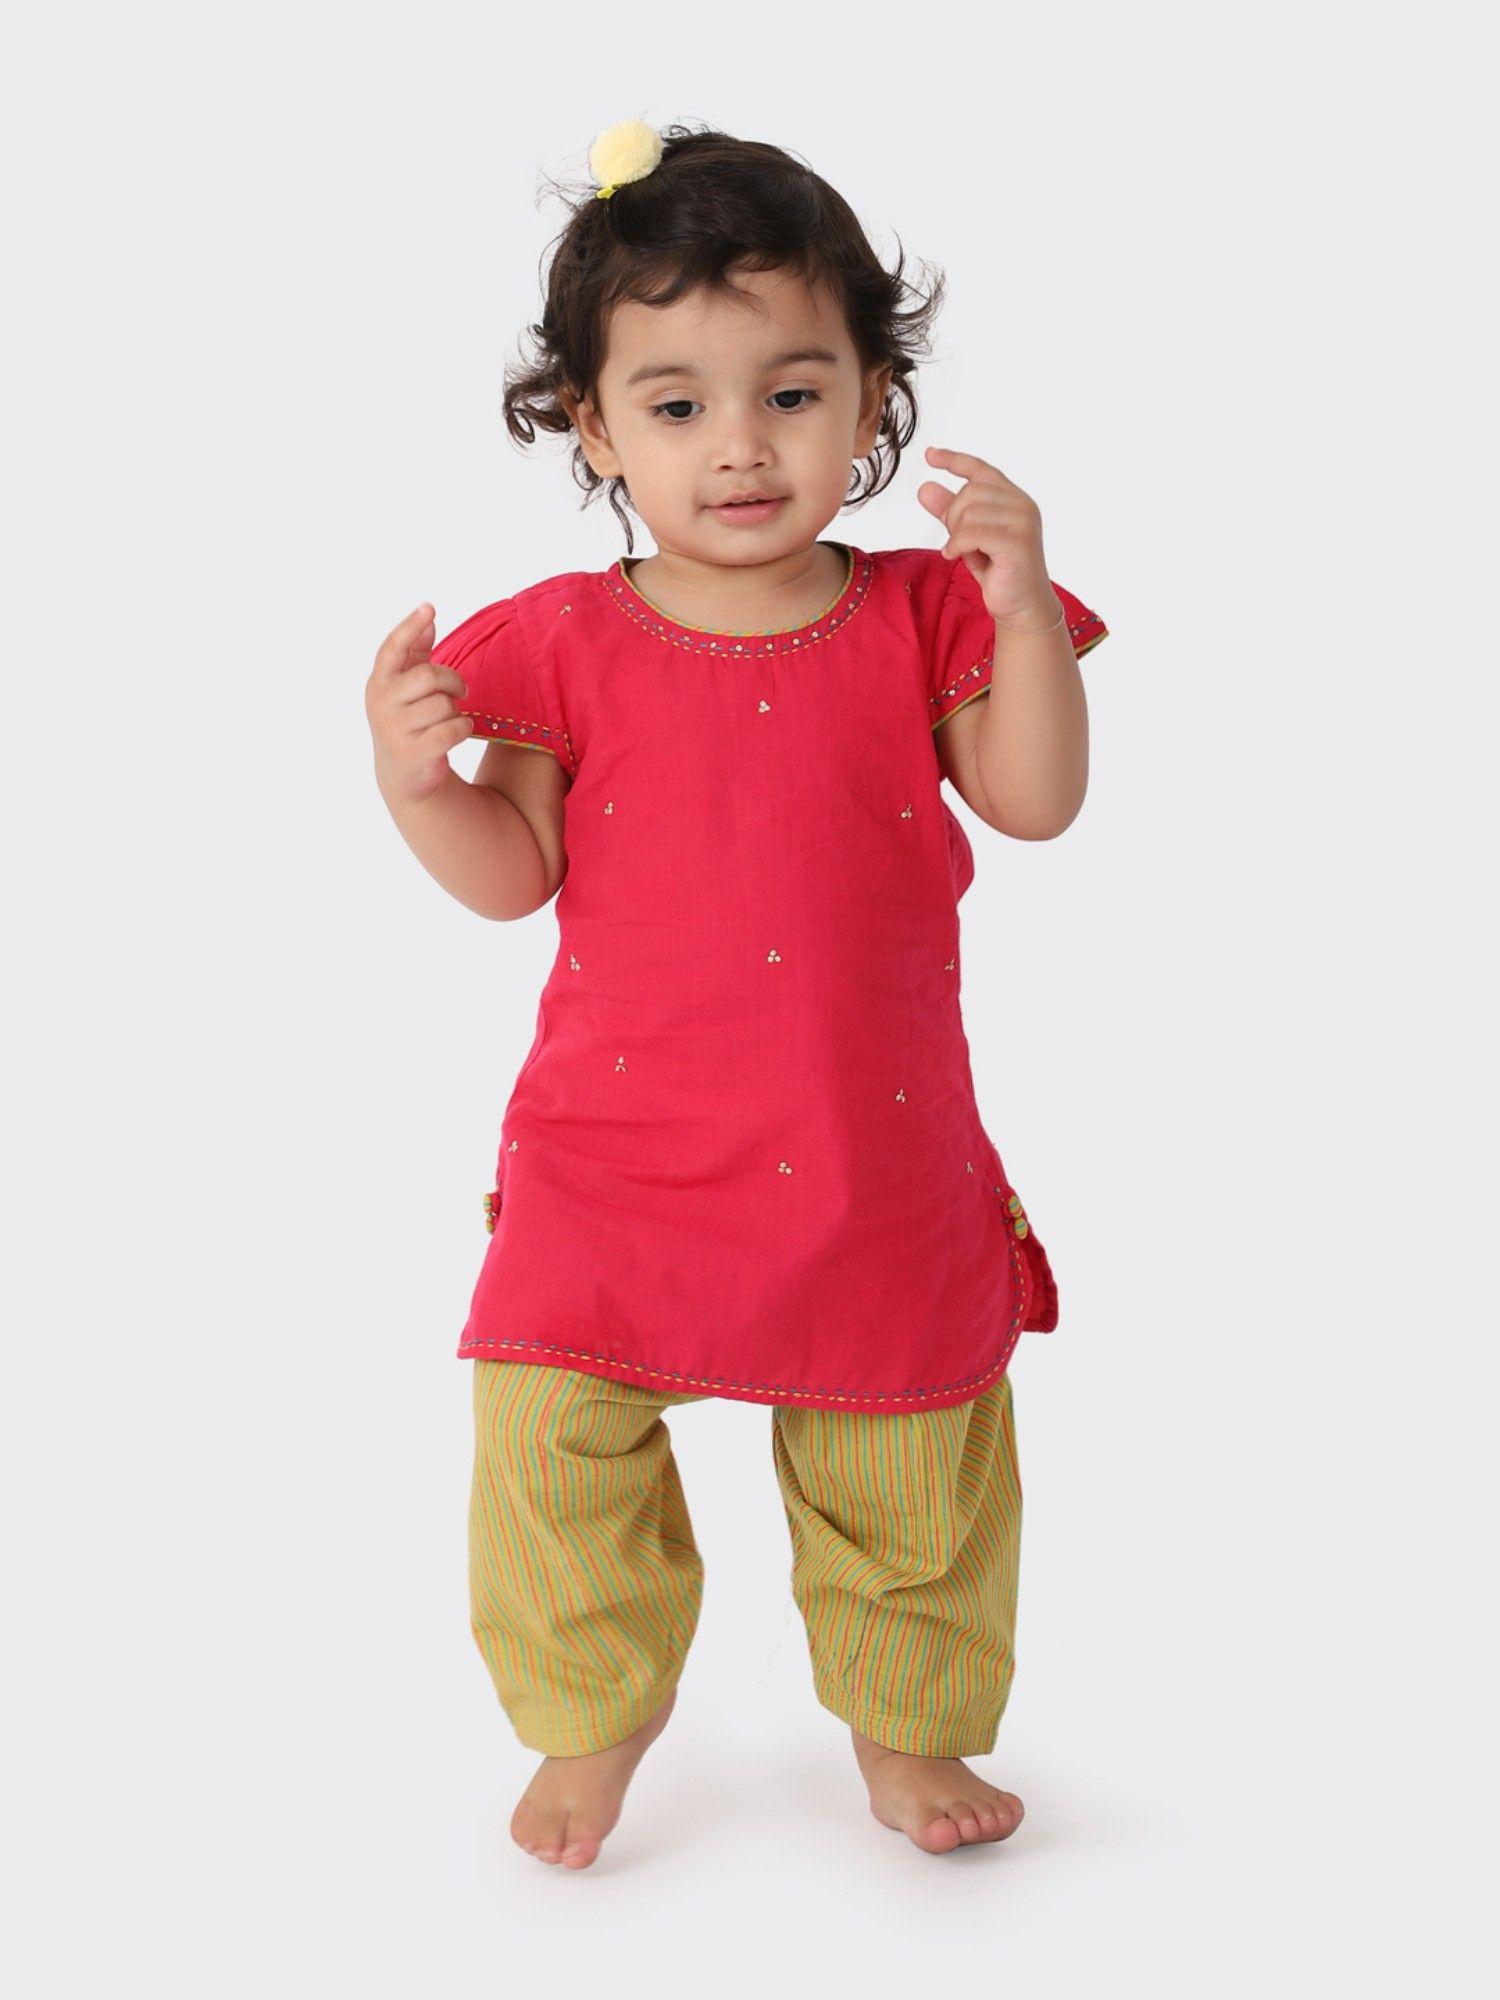 pink-cotton-printed-salwar-(set-of-2)